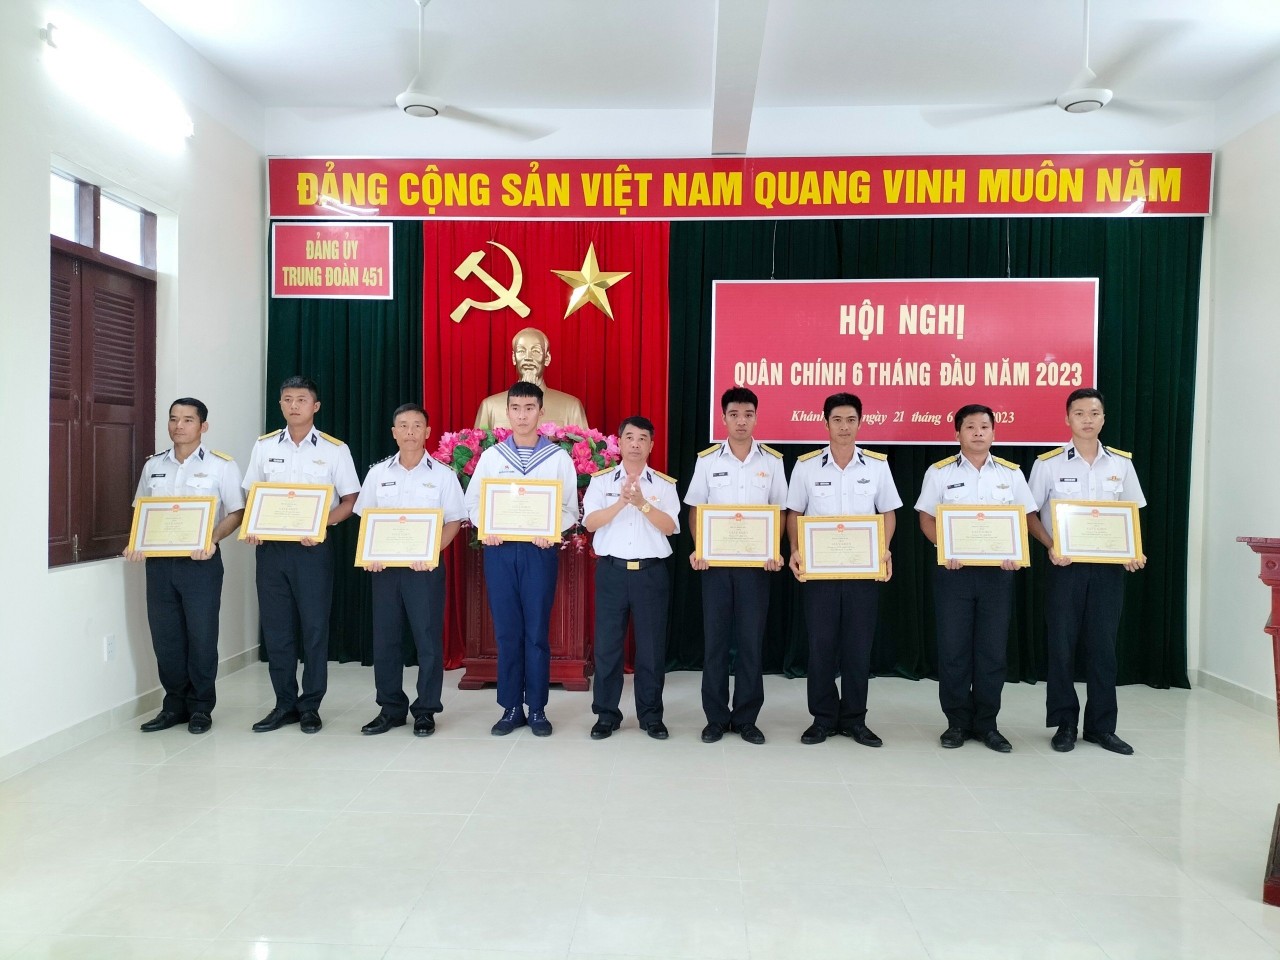 Trung đoàn 451 Hải quân nhận đỡ đầu con em ngư dân huyện đảo Phú Quý